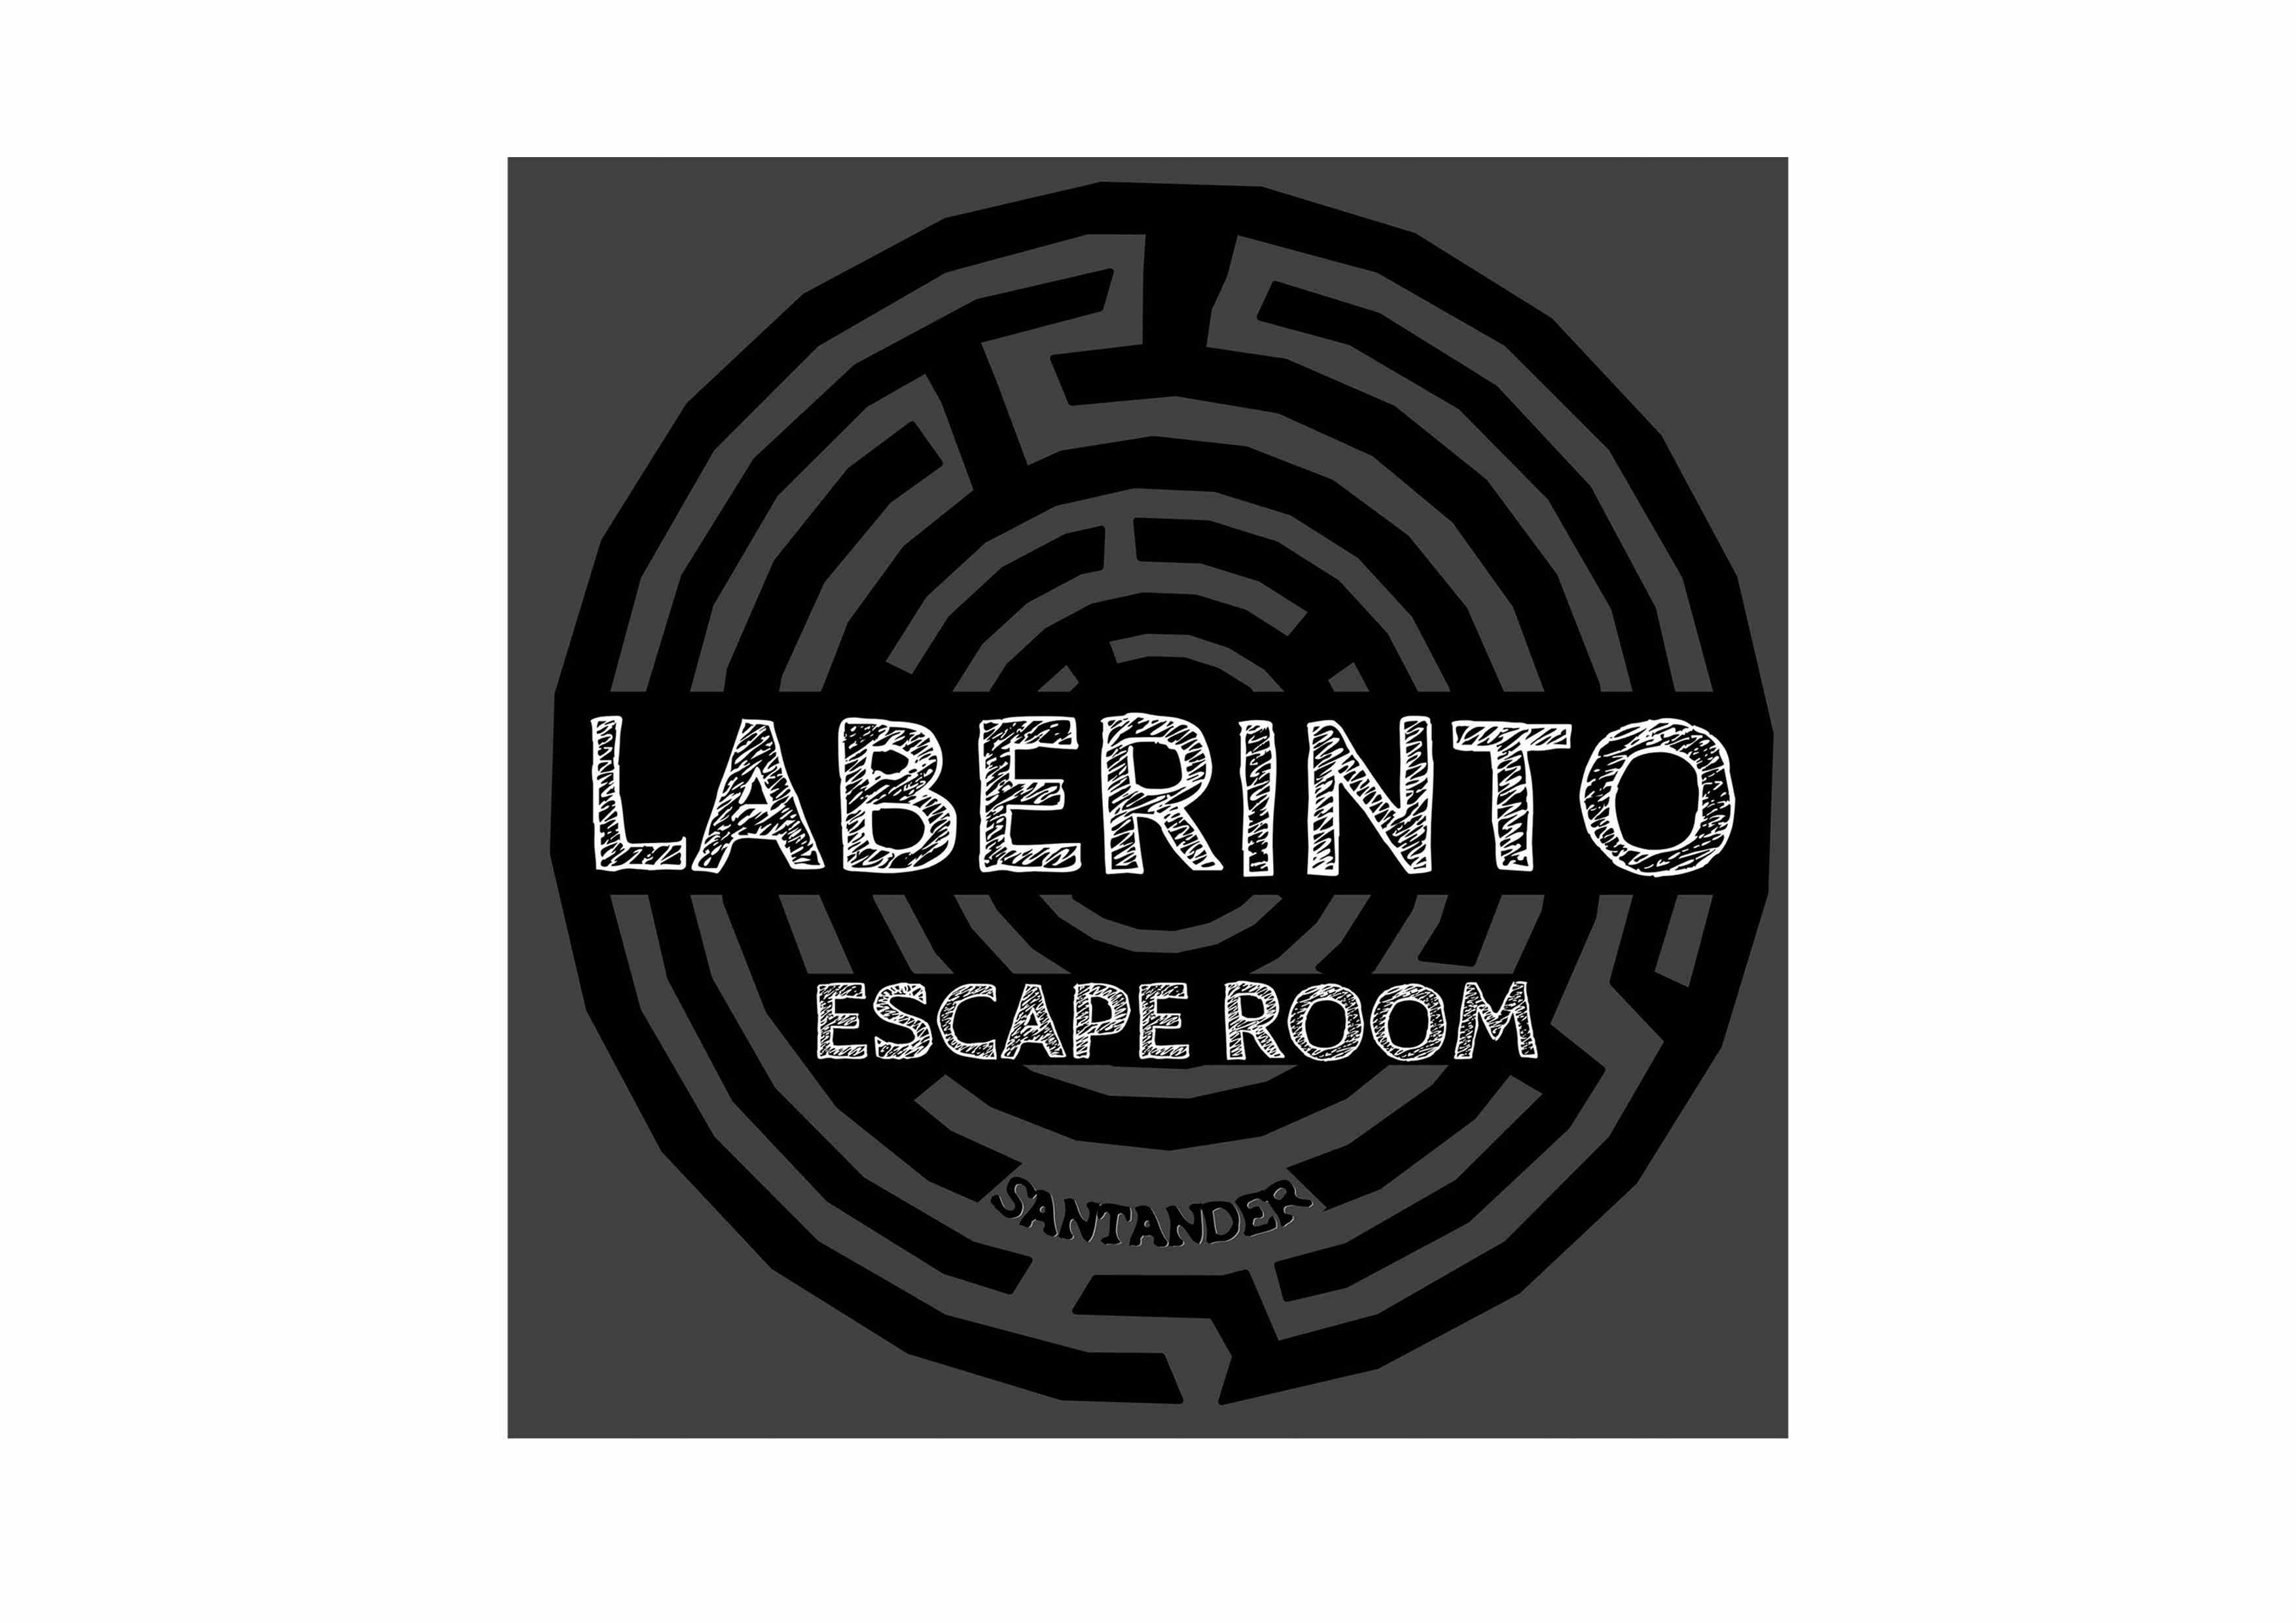 Laberinto Escape Room